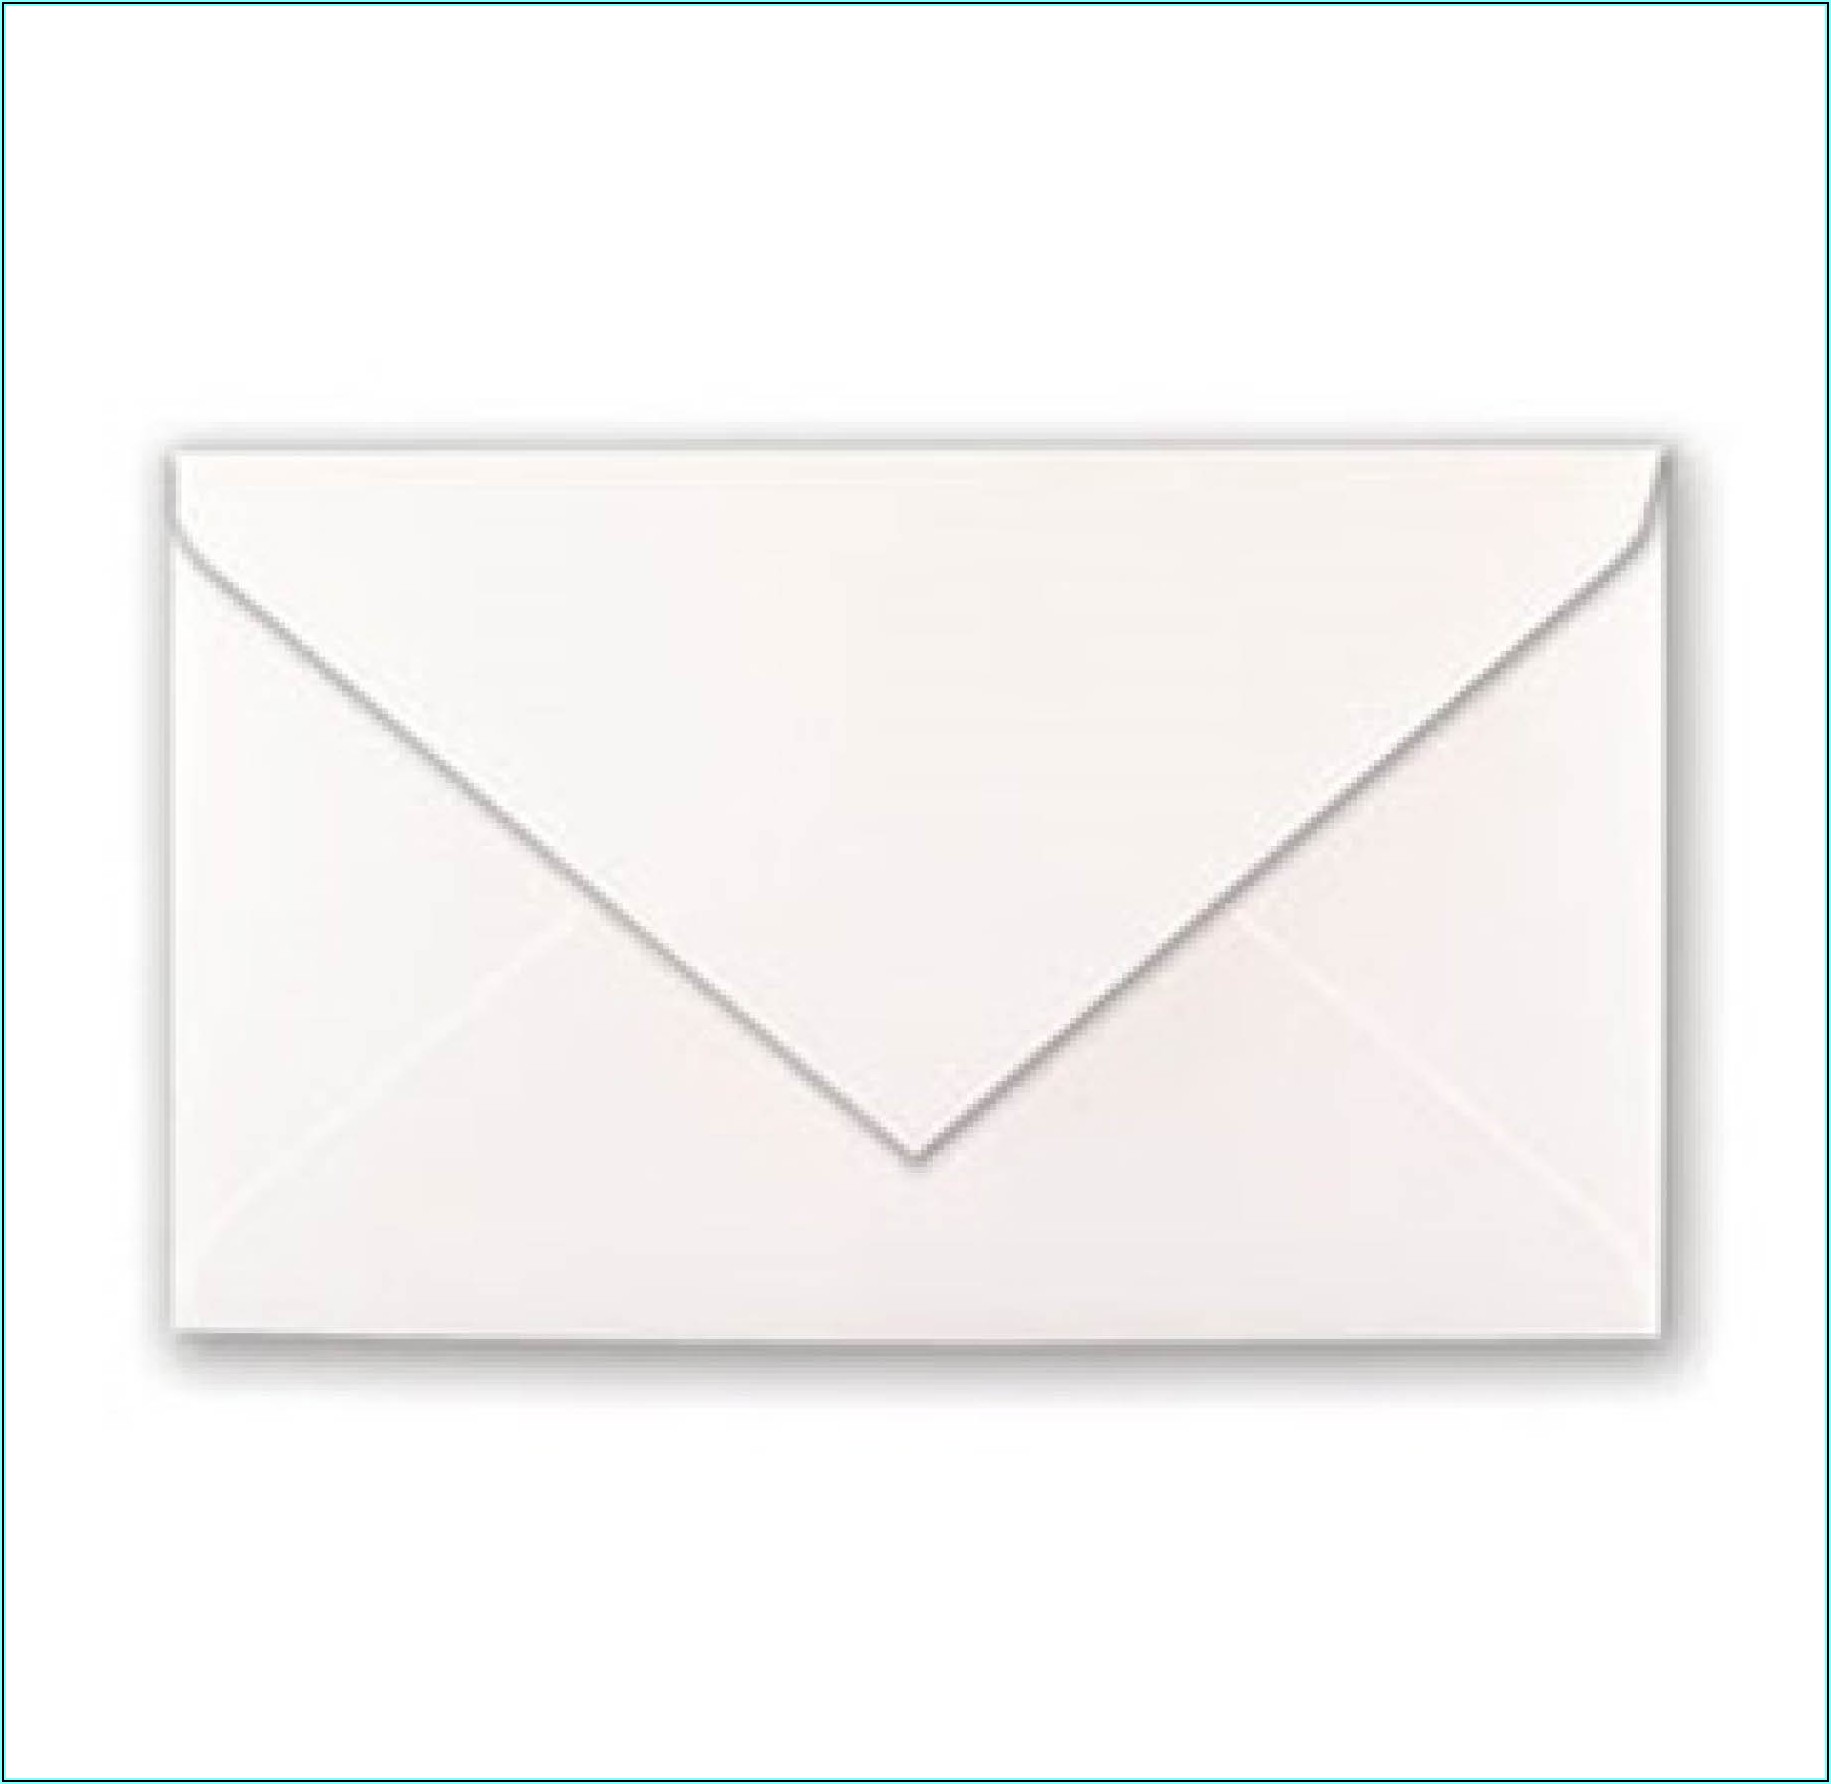 5x7 Envelopes In Mm